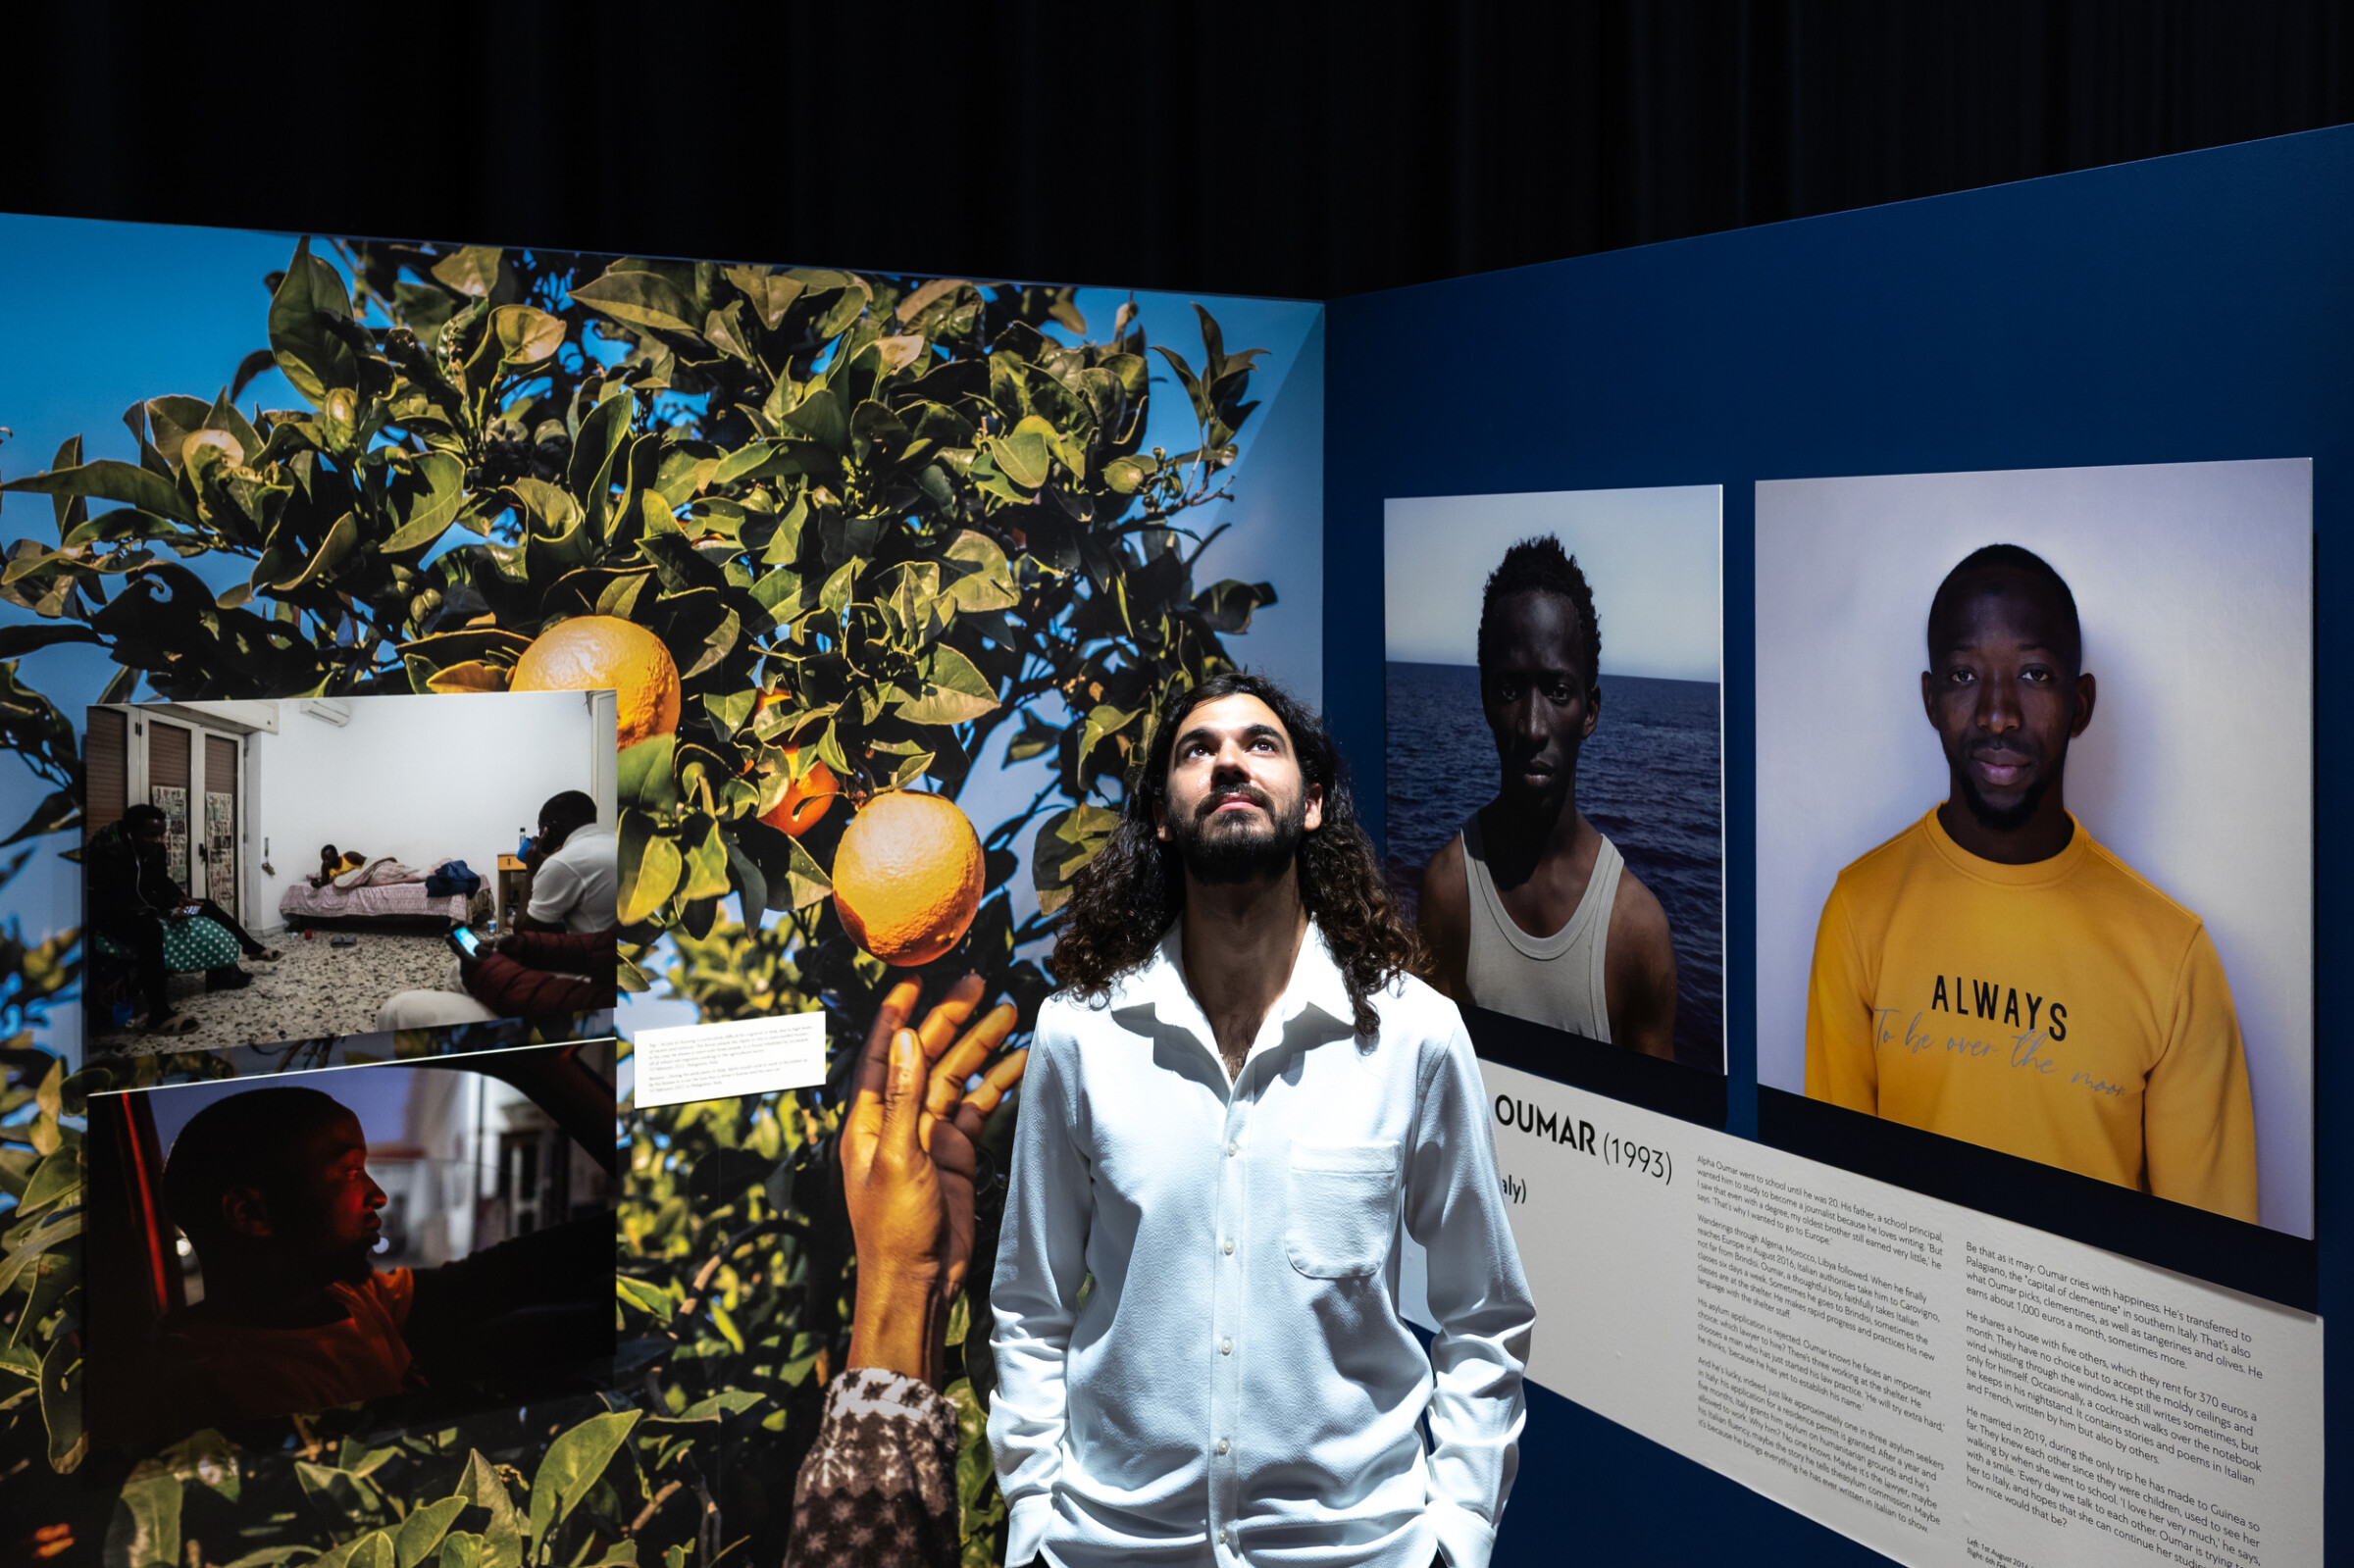 Αυτή η εικόνα, η οποία τραβήχτηκε στο πλαίσιο του Διεθνούς Φόρουμ Δημοσιογραφίας του iMEdD, δείχνει τον Ισπανό-Ιρανό φωτοδημοσιογράφο Σεζάρ Ντεζφούλι να ποζάρει ανάμεσα σε εικόνες της φωτογραφικής έκθεσης του project του με τίτλο «Passengers».